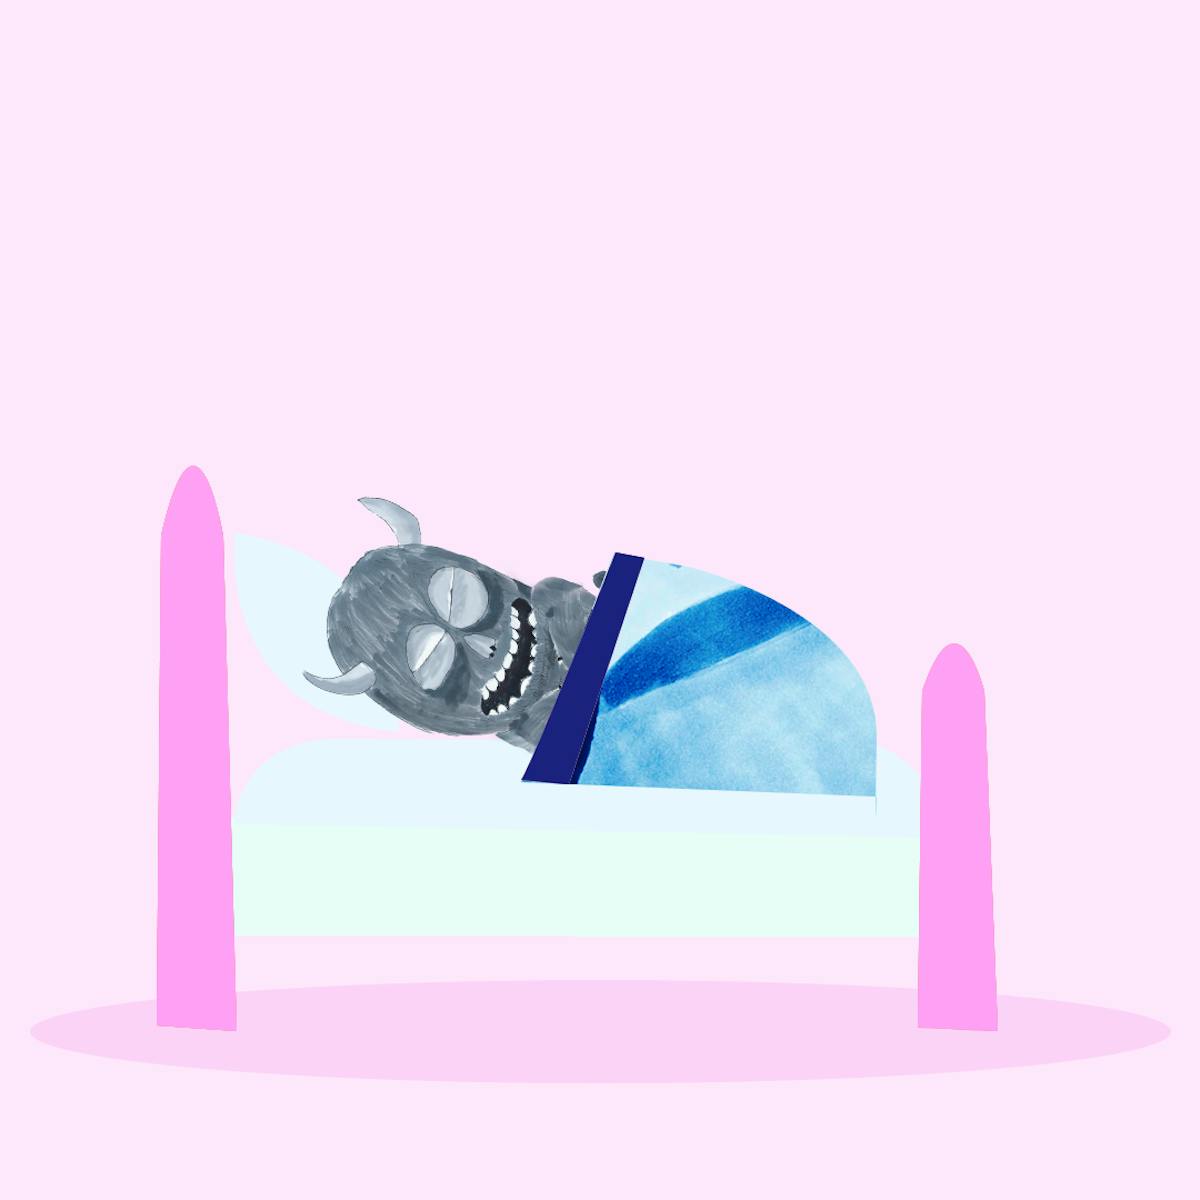 Garitma, Monstro dormido en su cama, cómic dibujo marcador sobre papel